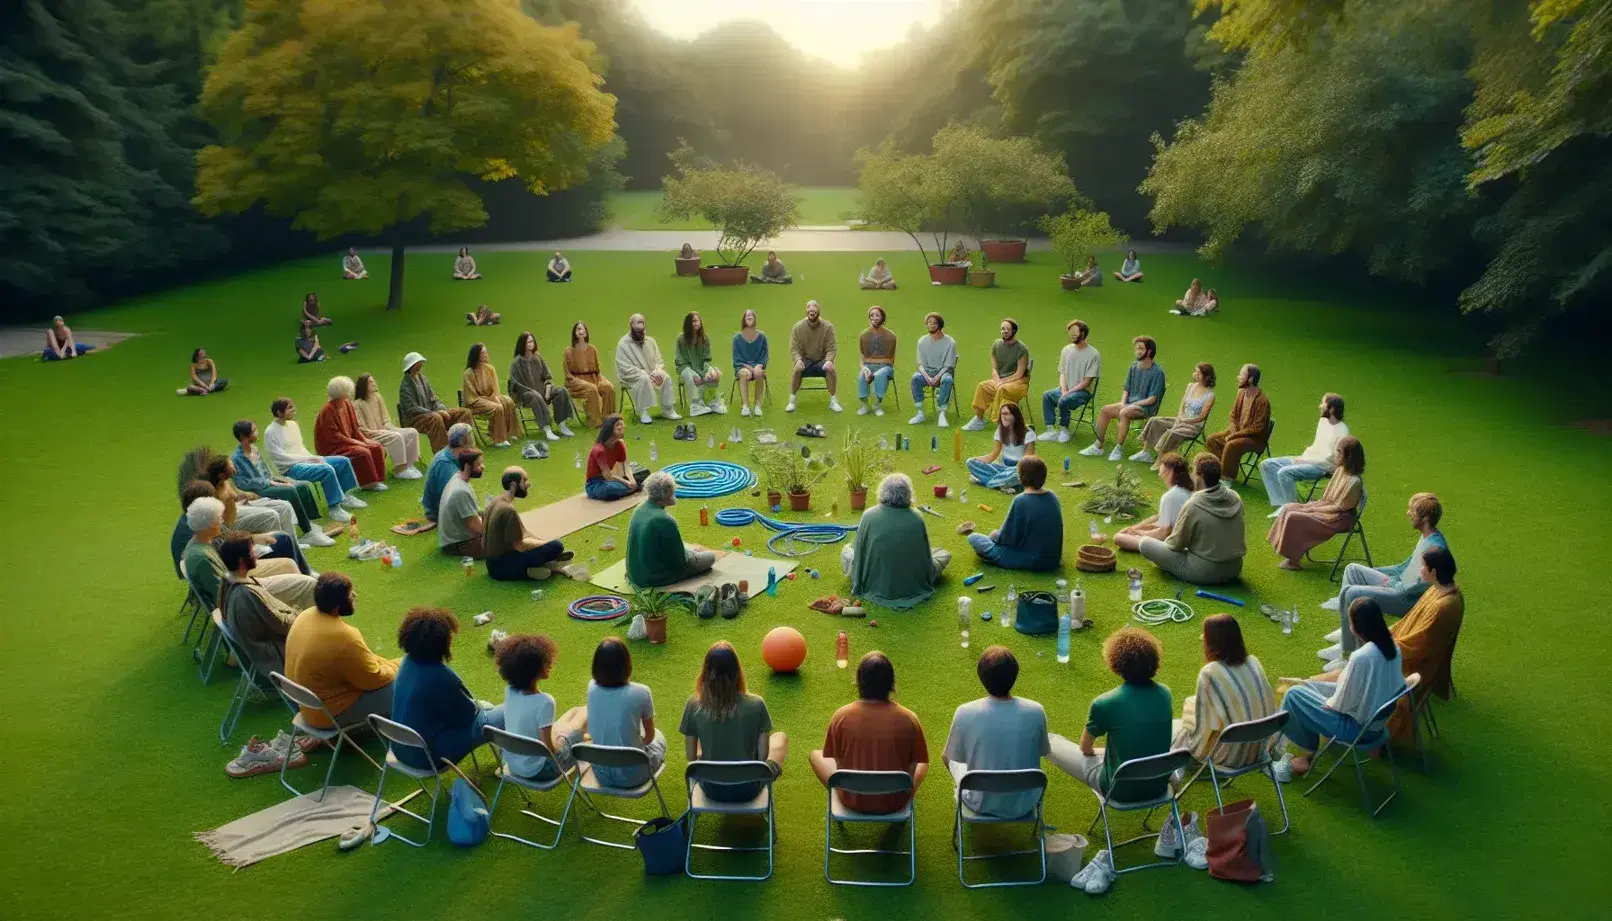 Grupo diverso de personas sentadas en círculo en un parque con objetos de actividad física en el centro, disfrutando de un entorno natural tranquilo.